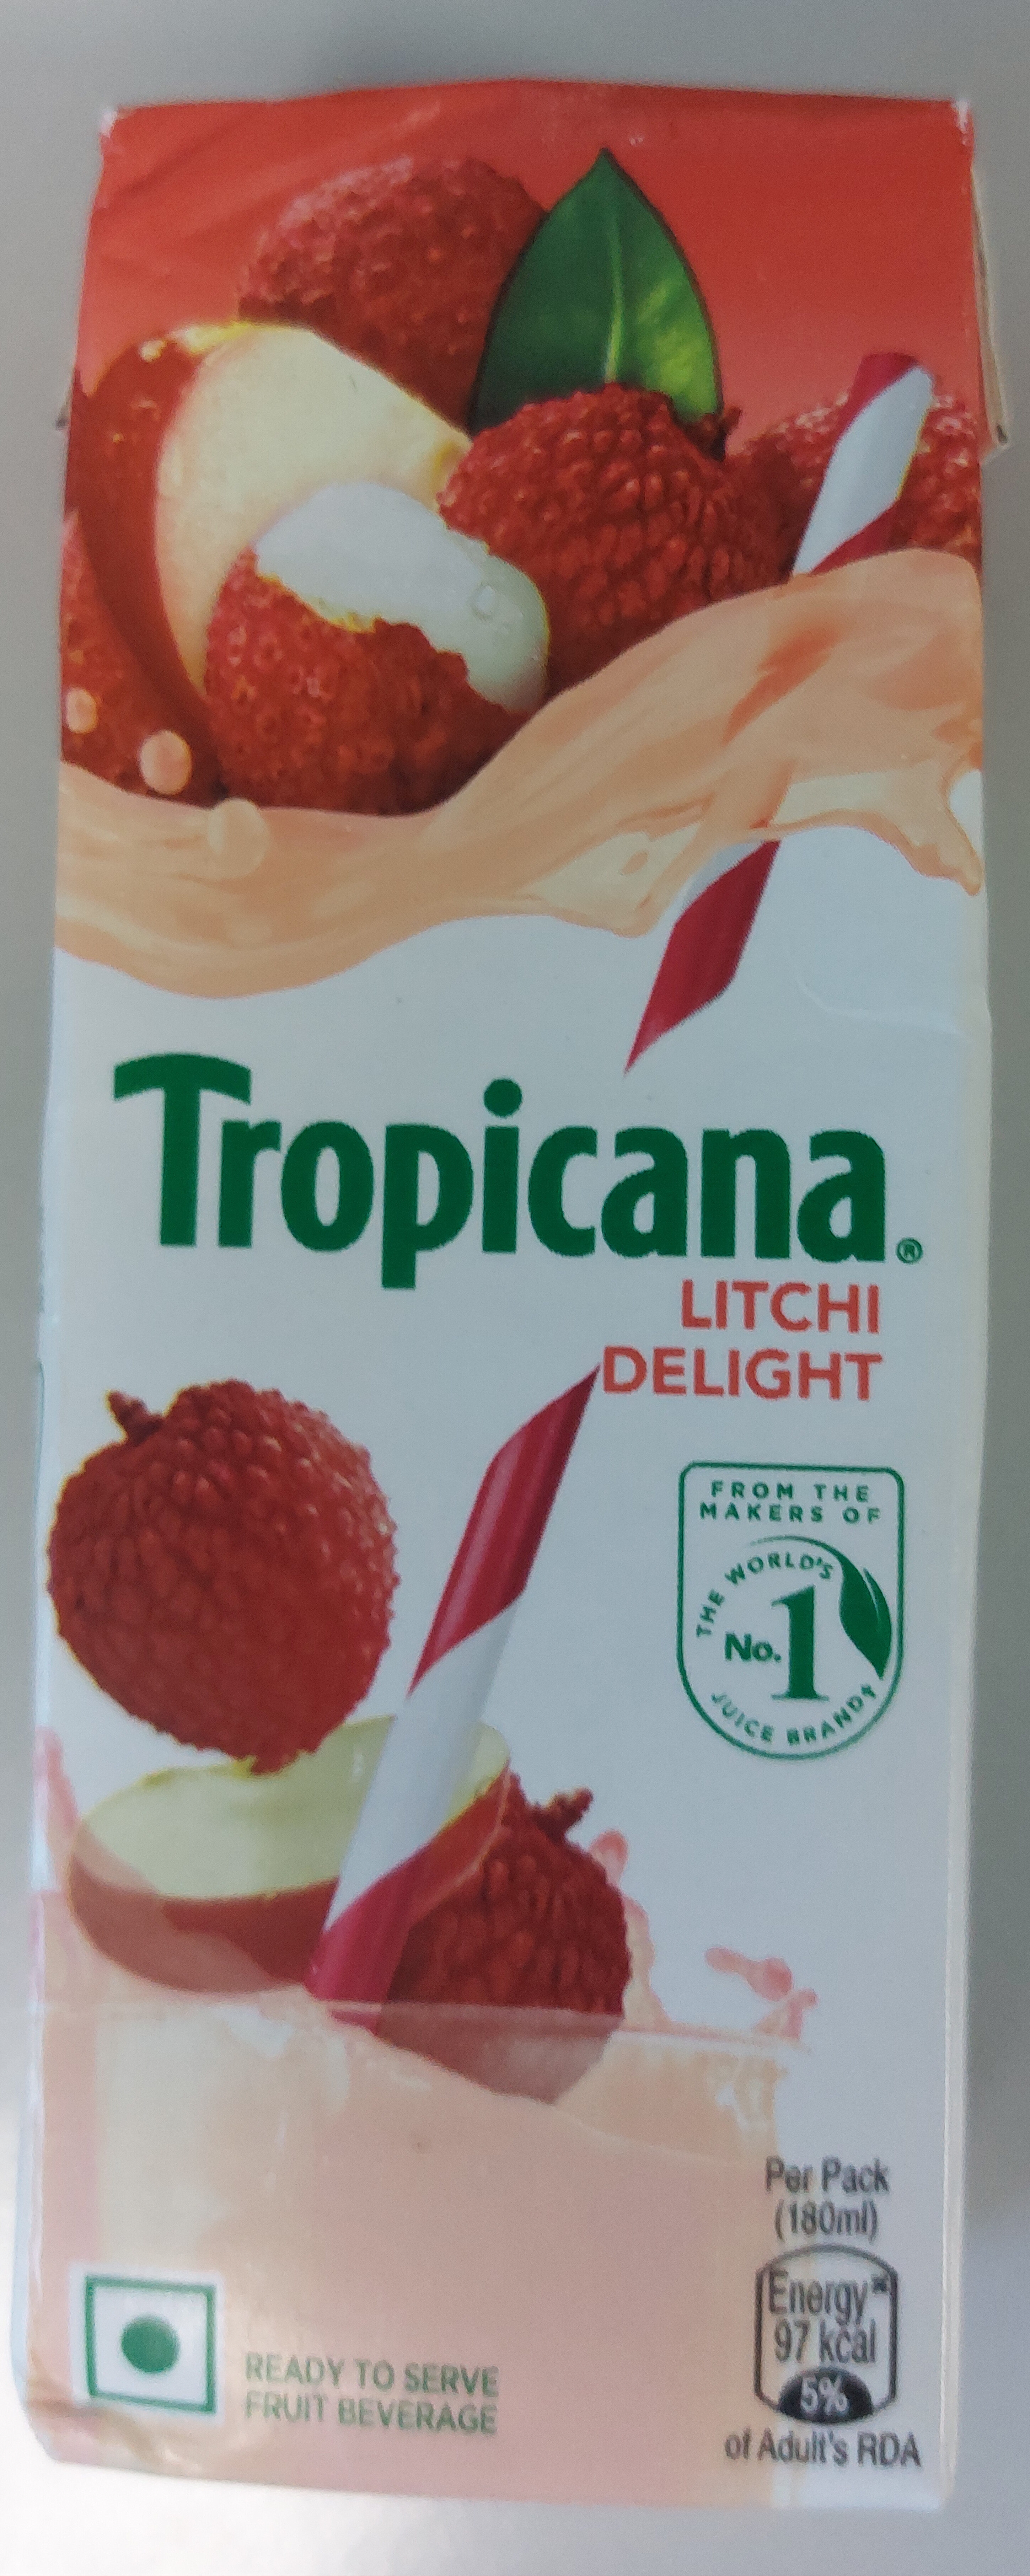 Tropicana Litchi Delight - Product